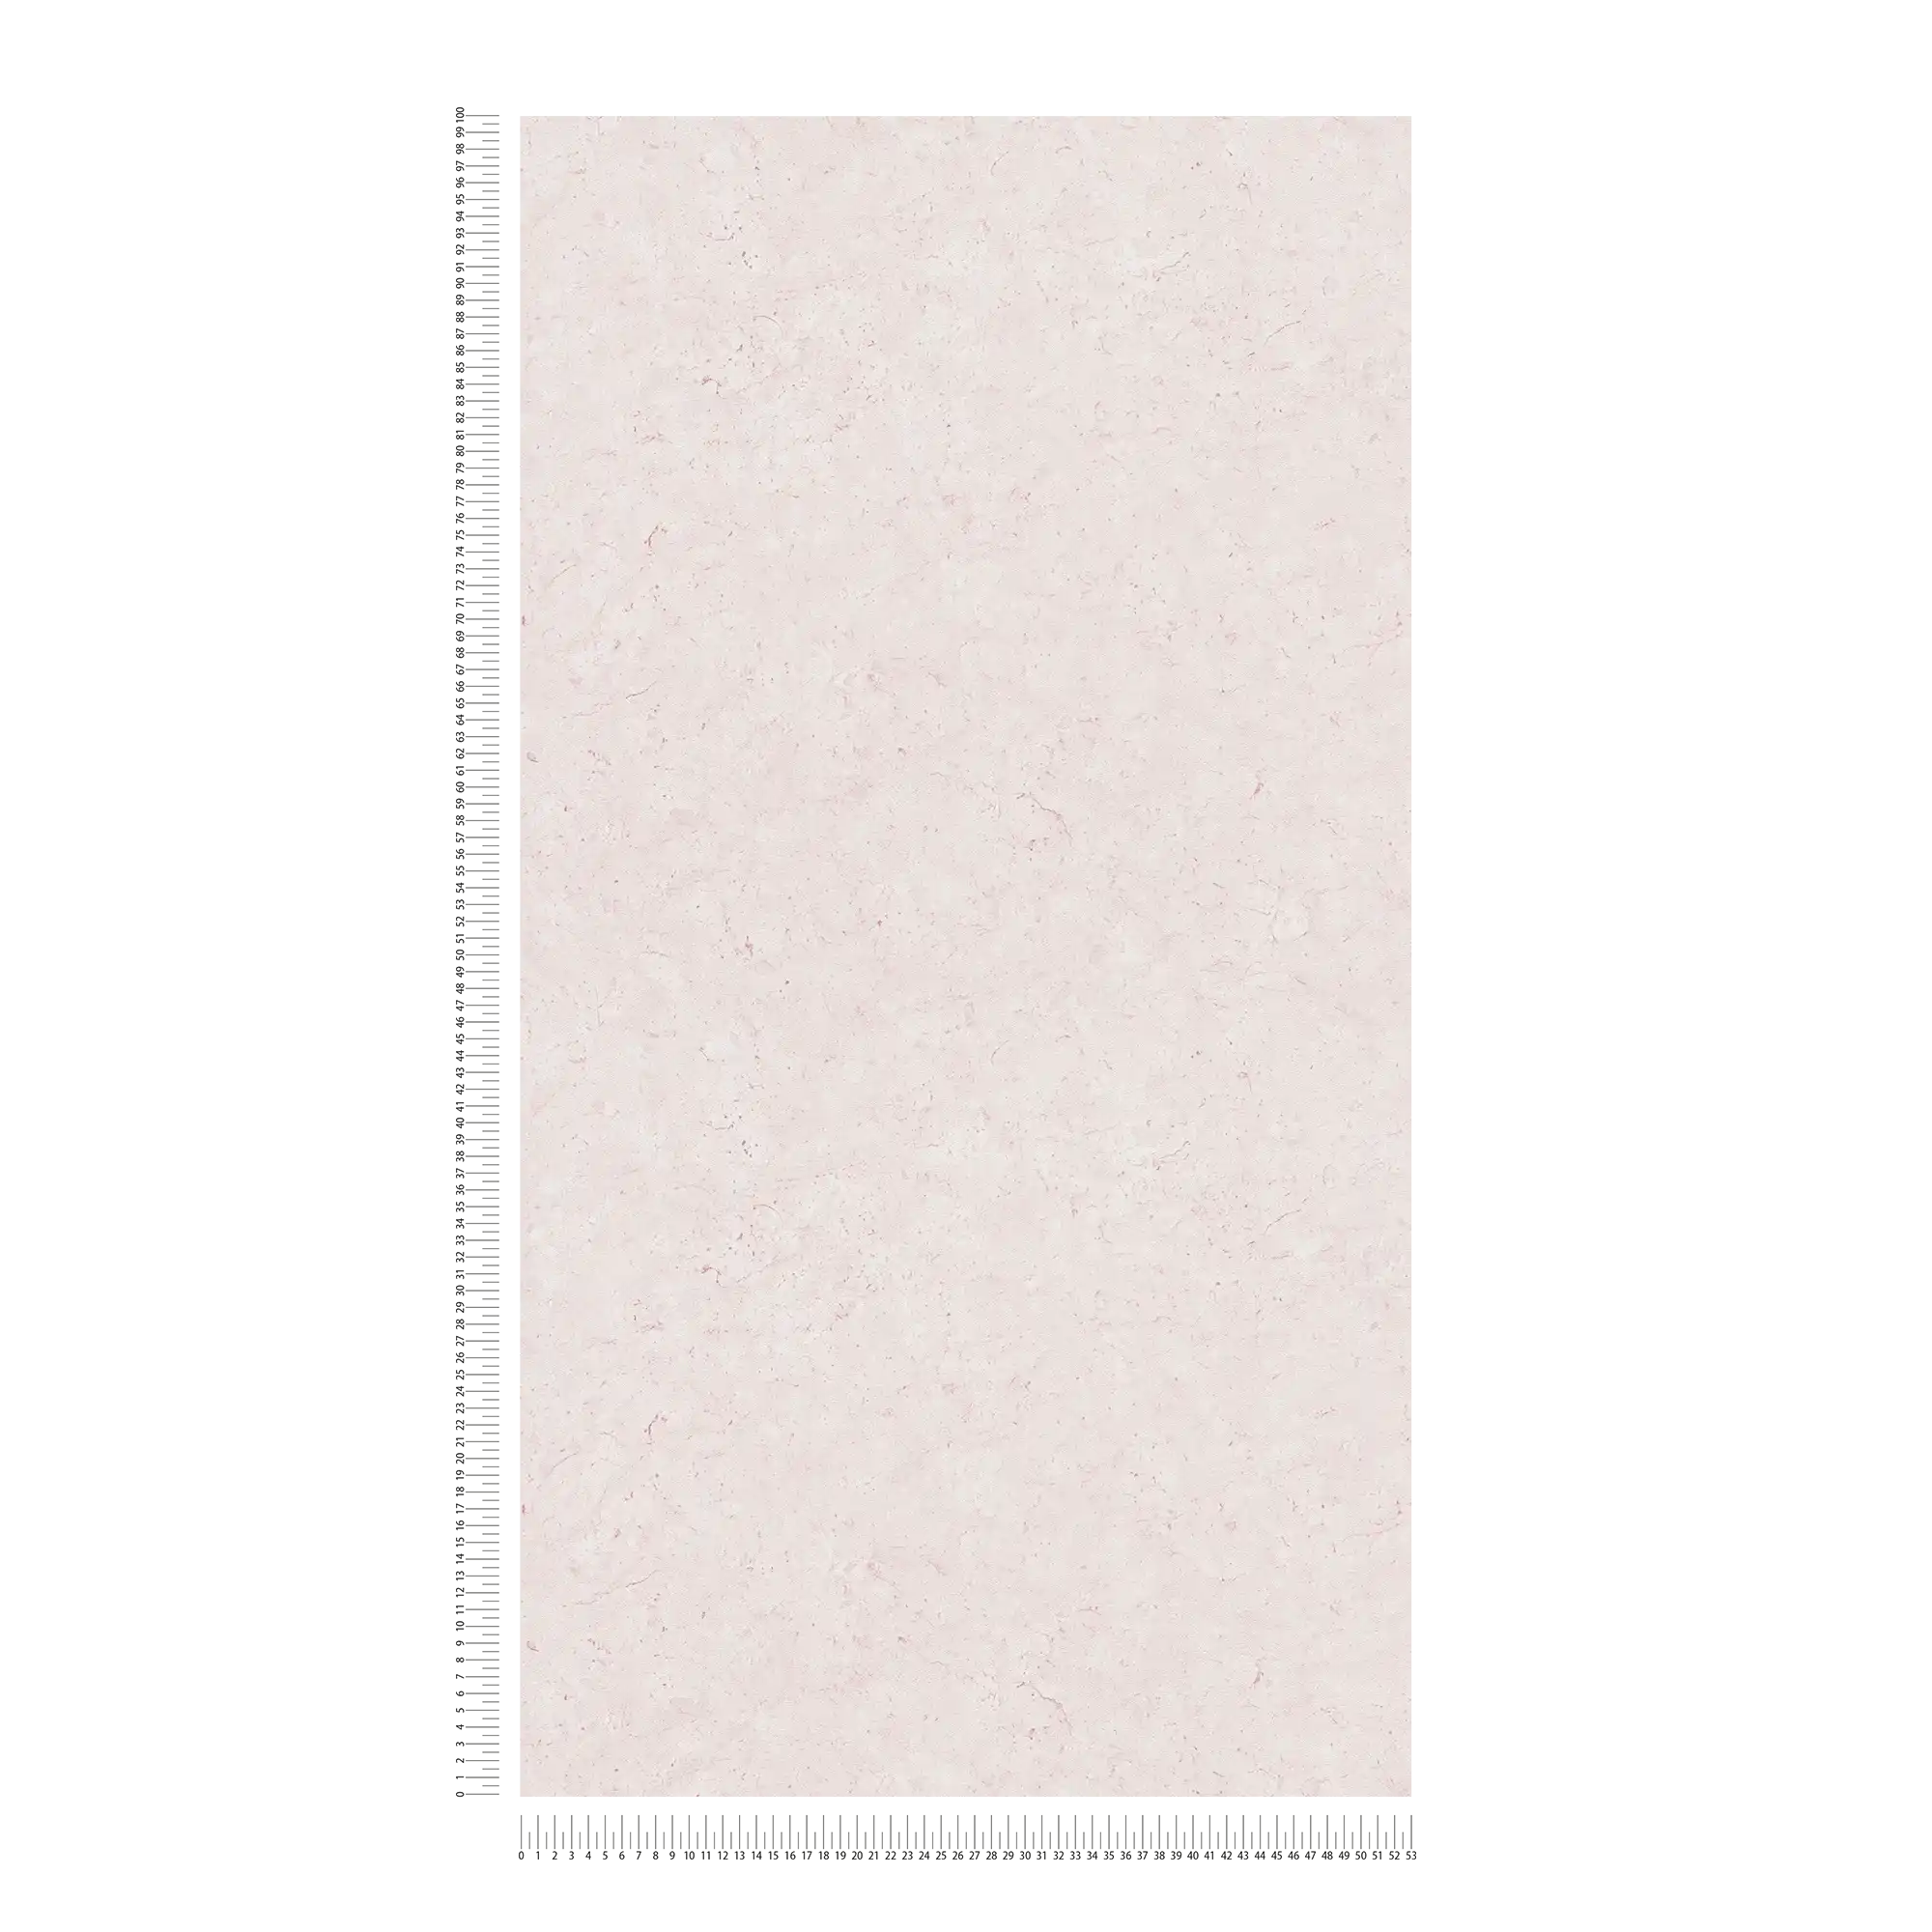             Papel pintado texturizado liso, con aspecto de hormigón - rosa
        